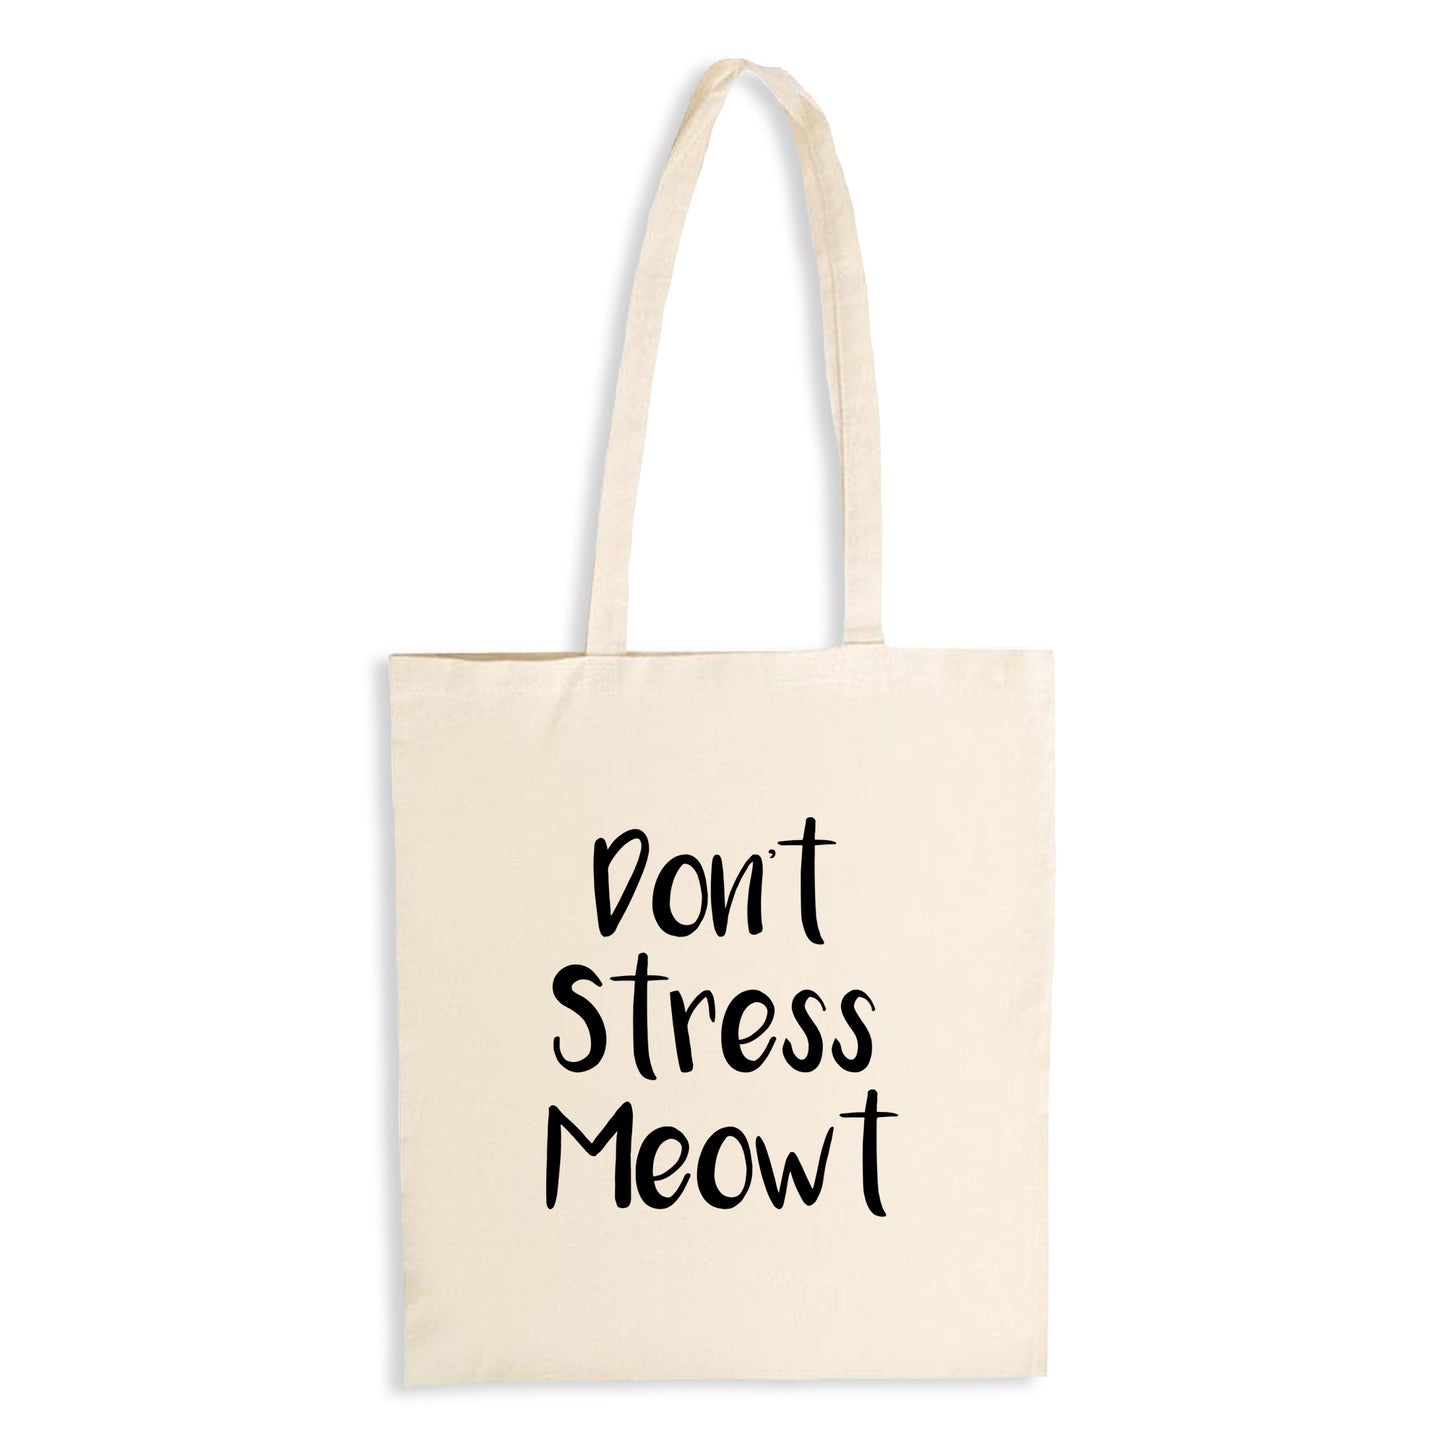 Don't Stress Meowt - Natural Tote Bag